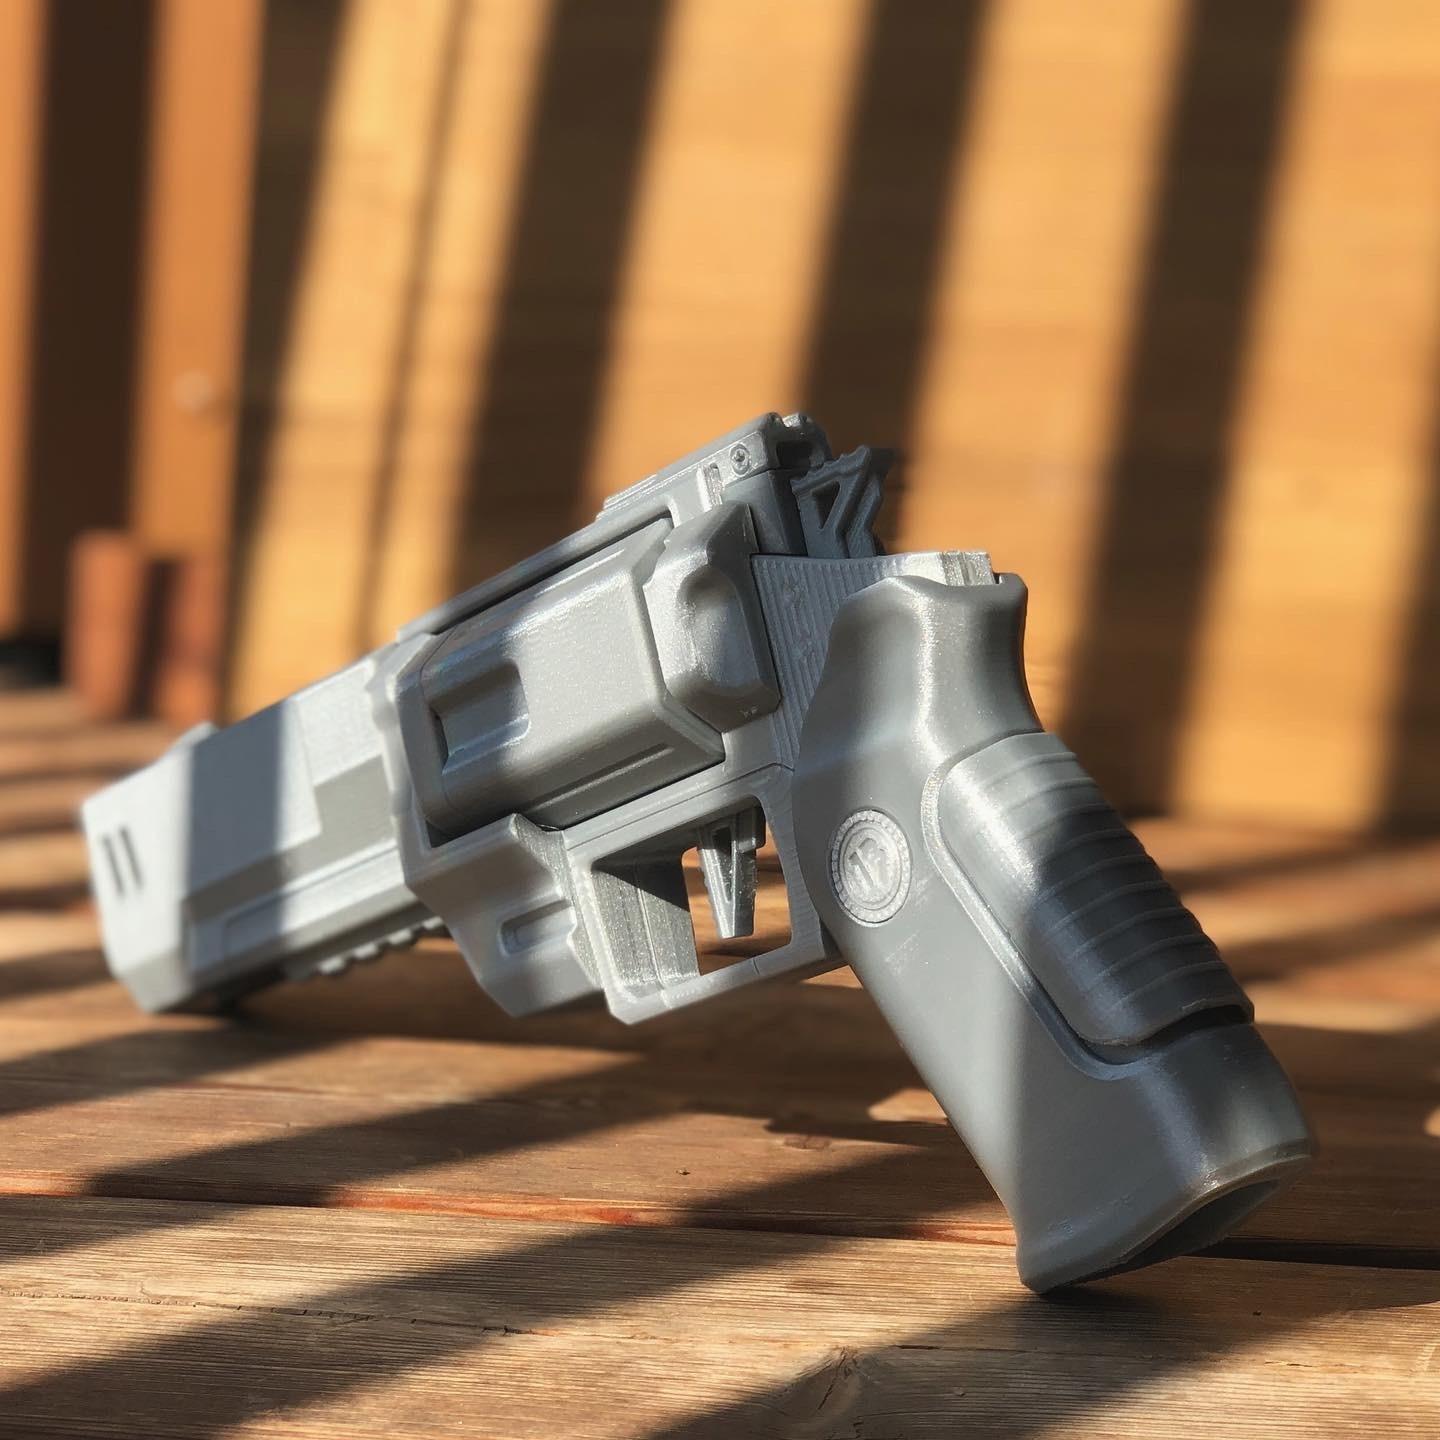 3dworkbech Revolver 2.0 3d model